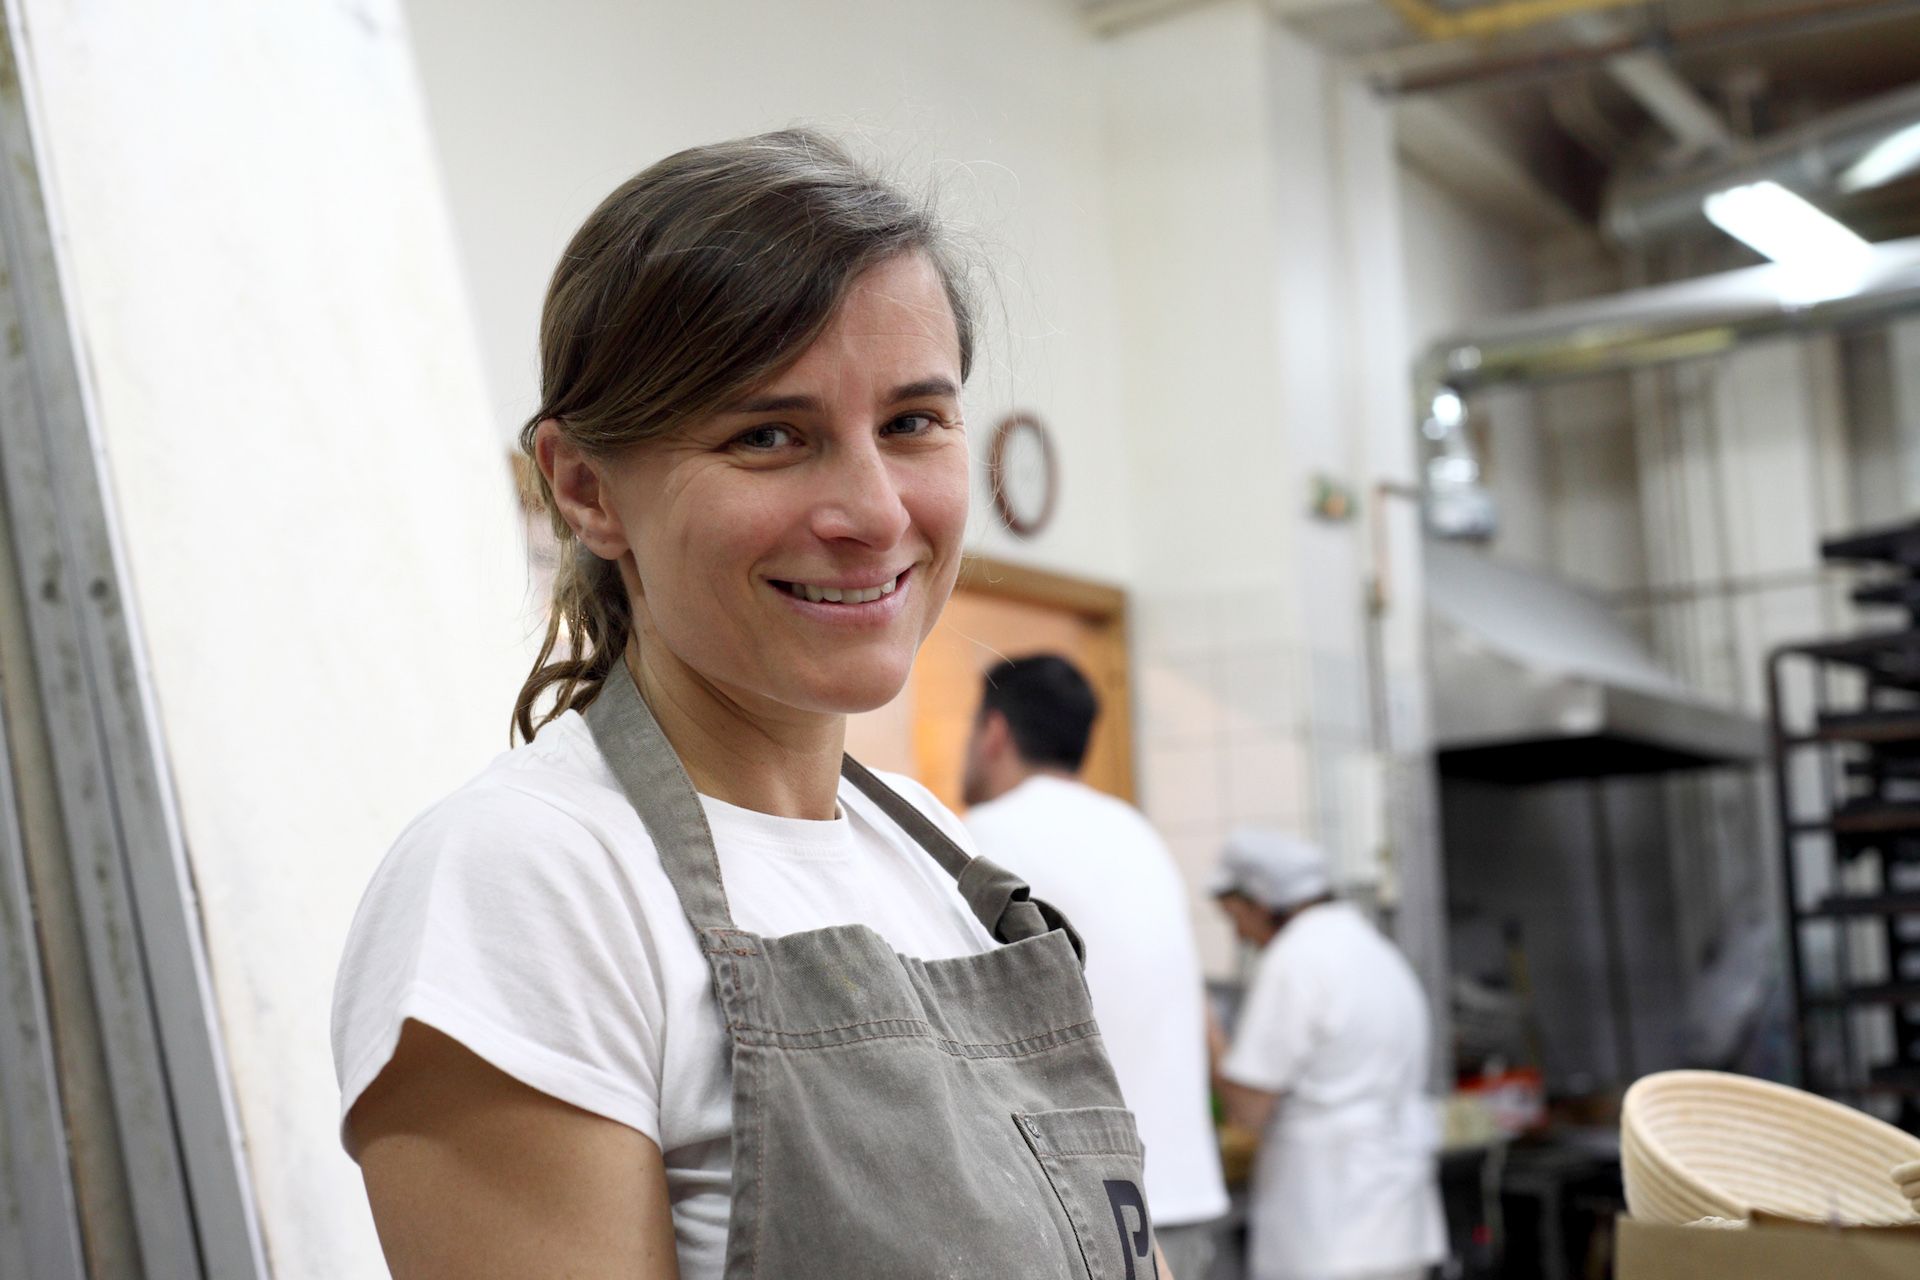 Η Ελισσάβετ Κουλούρη, παρασκευάστρια ψωμιού με επιλεγμένες πρώτες ύλες, Αθήνα, Μάρτιος 2016